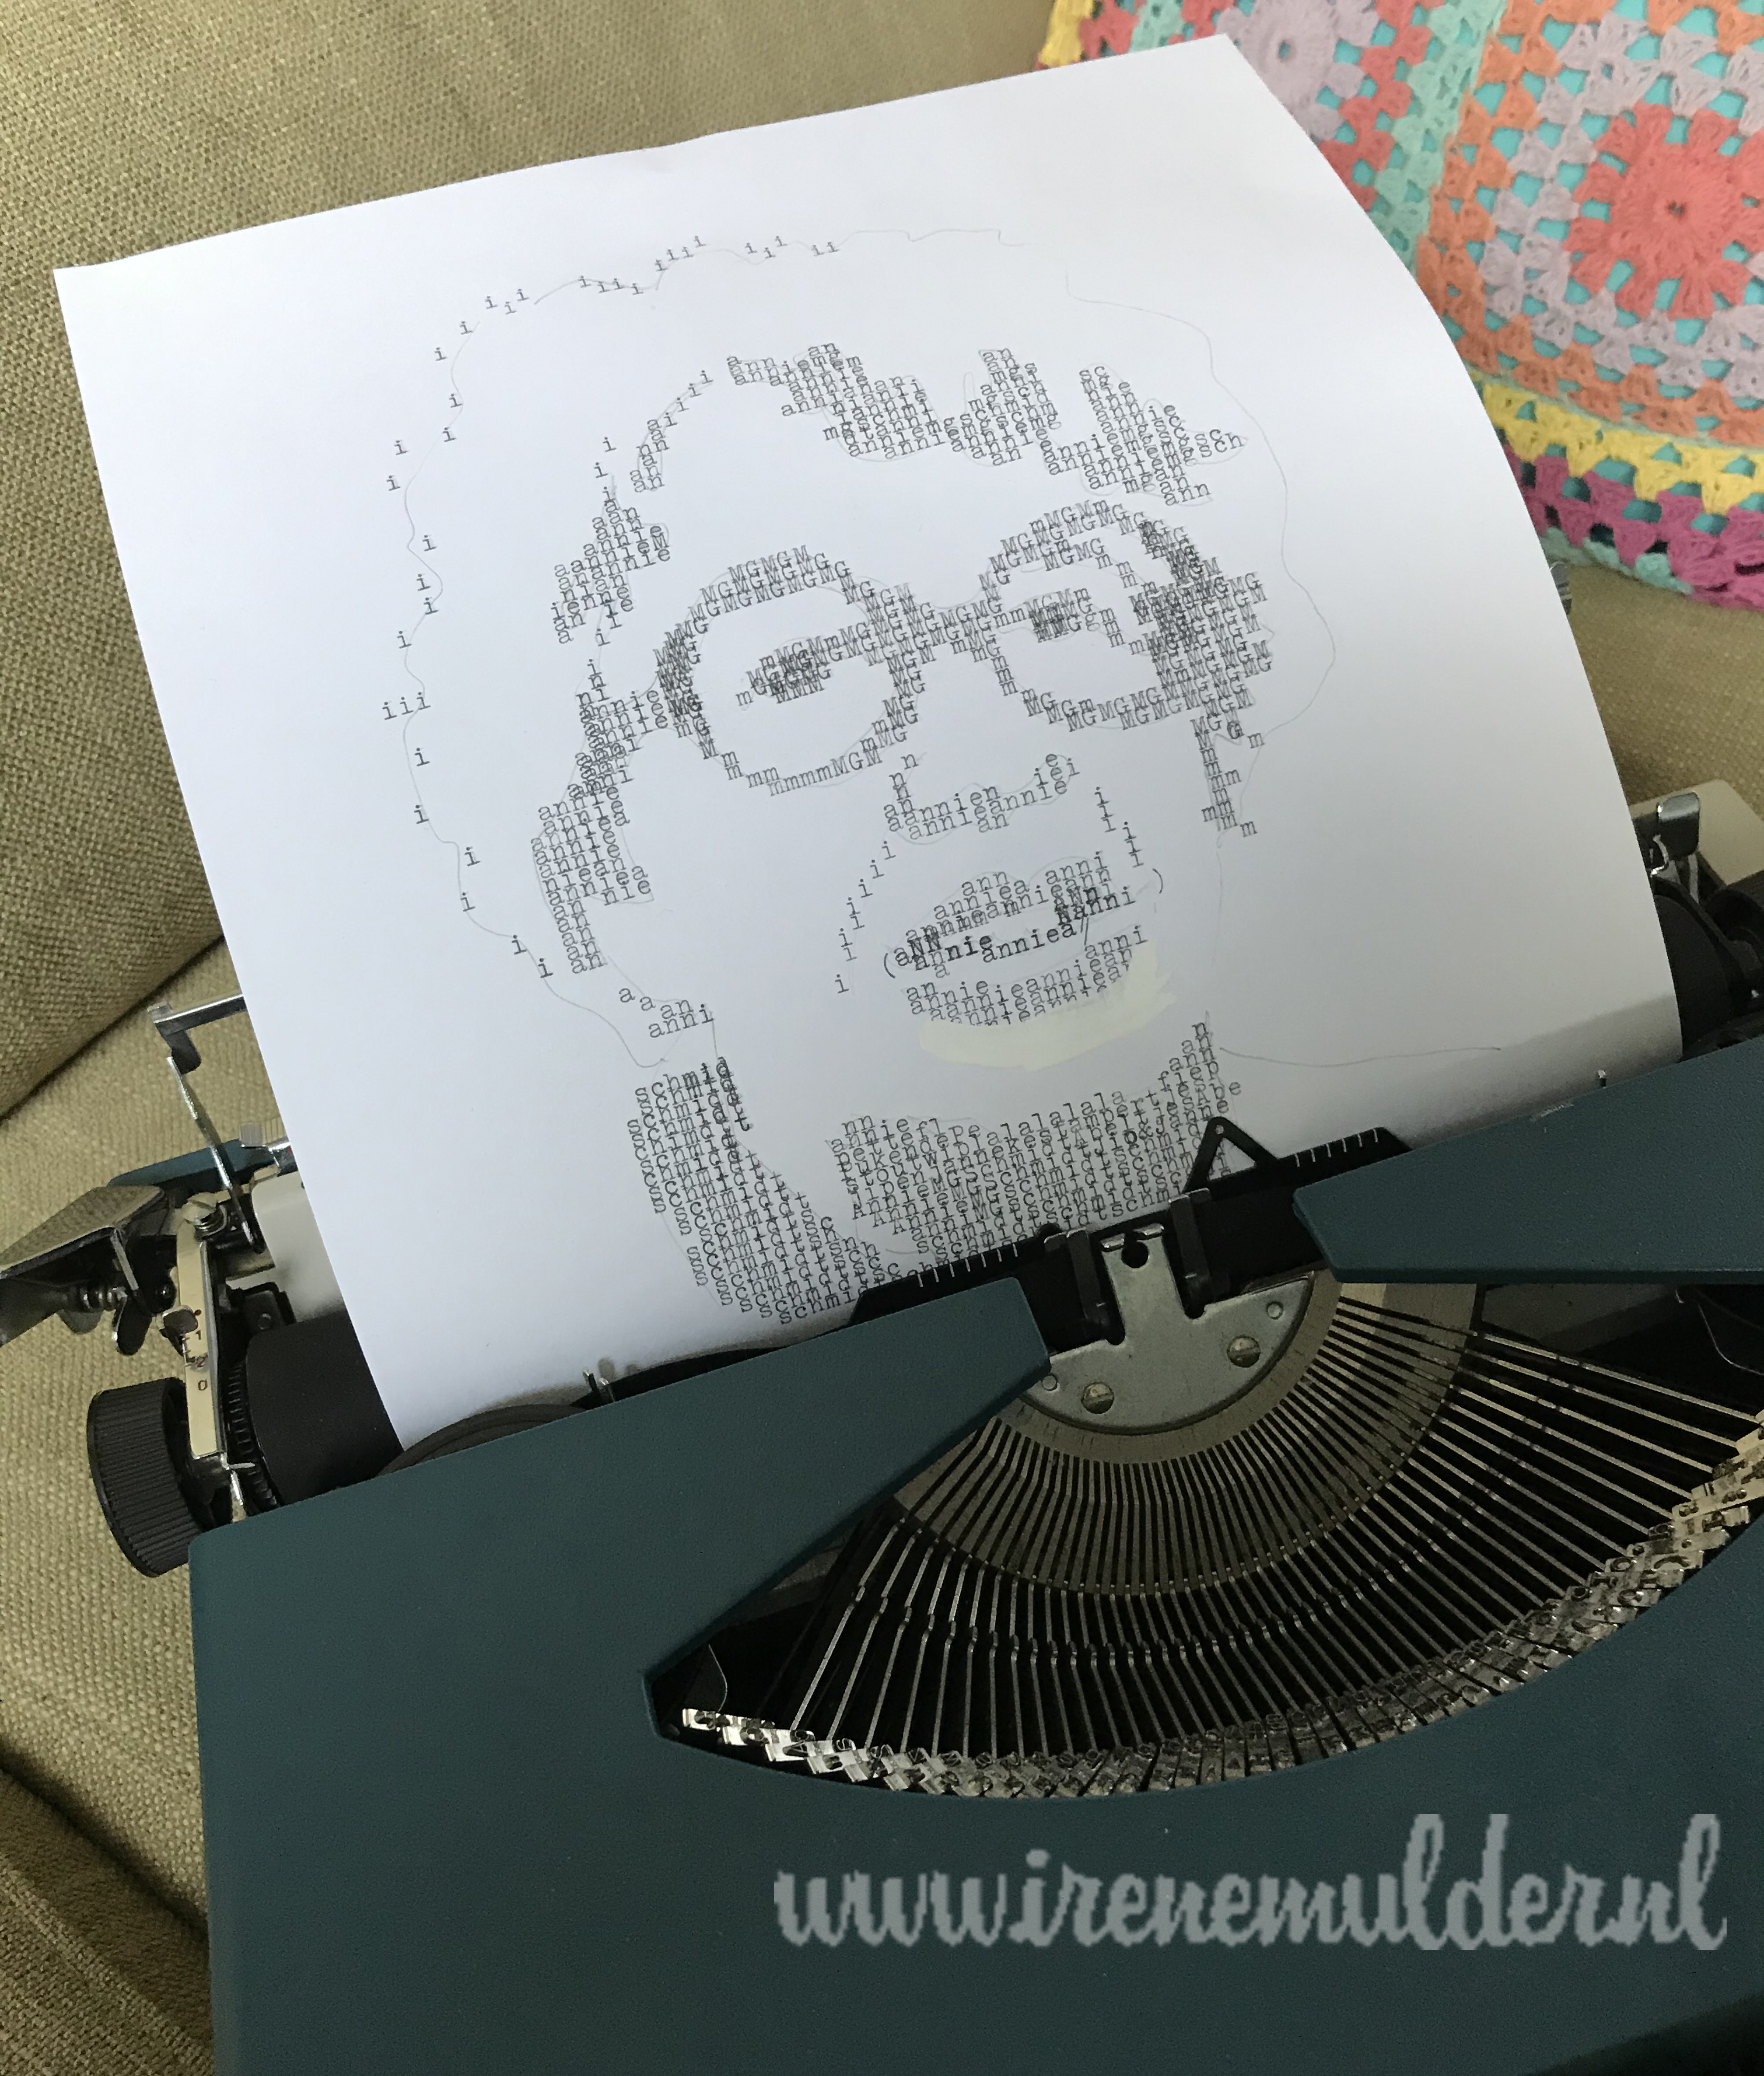 Typemachine met portret opgebouwd uit de letters van Annie MG Schmidt